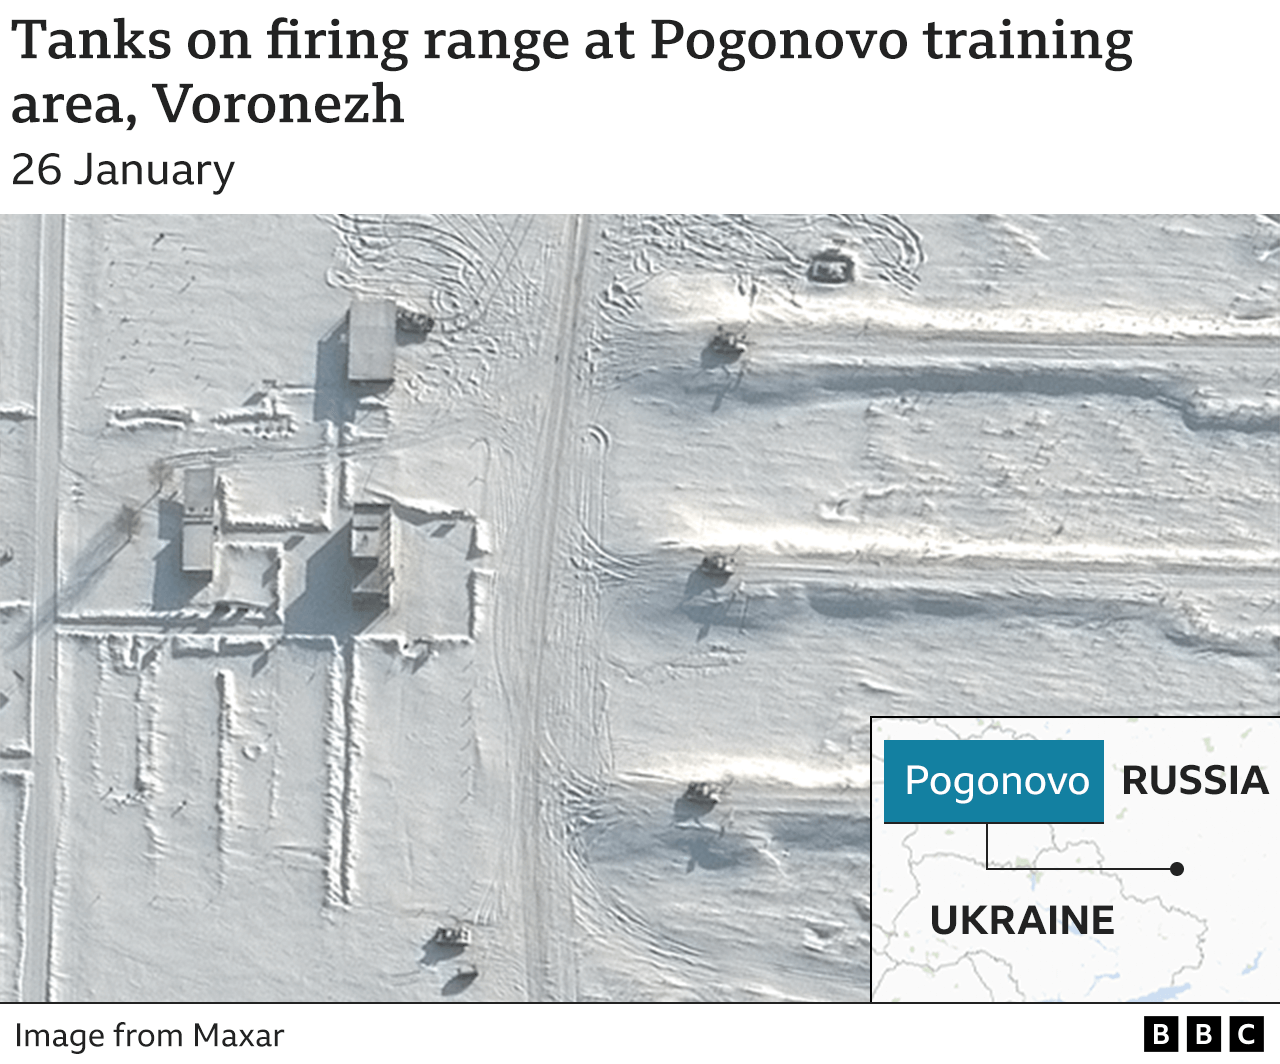 Satellite image showing tanks on firing range in Voronezh